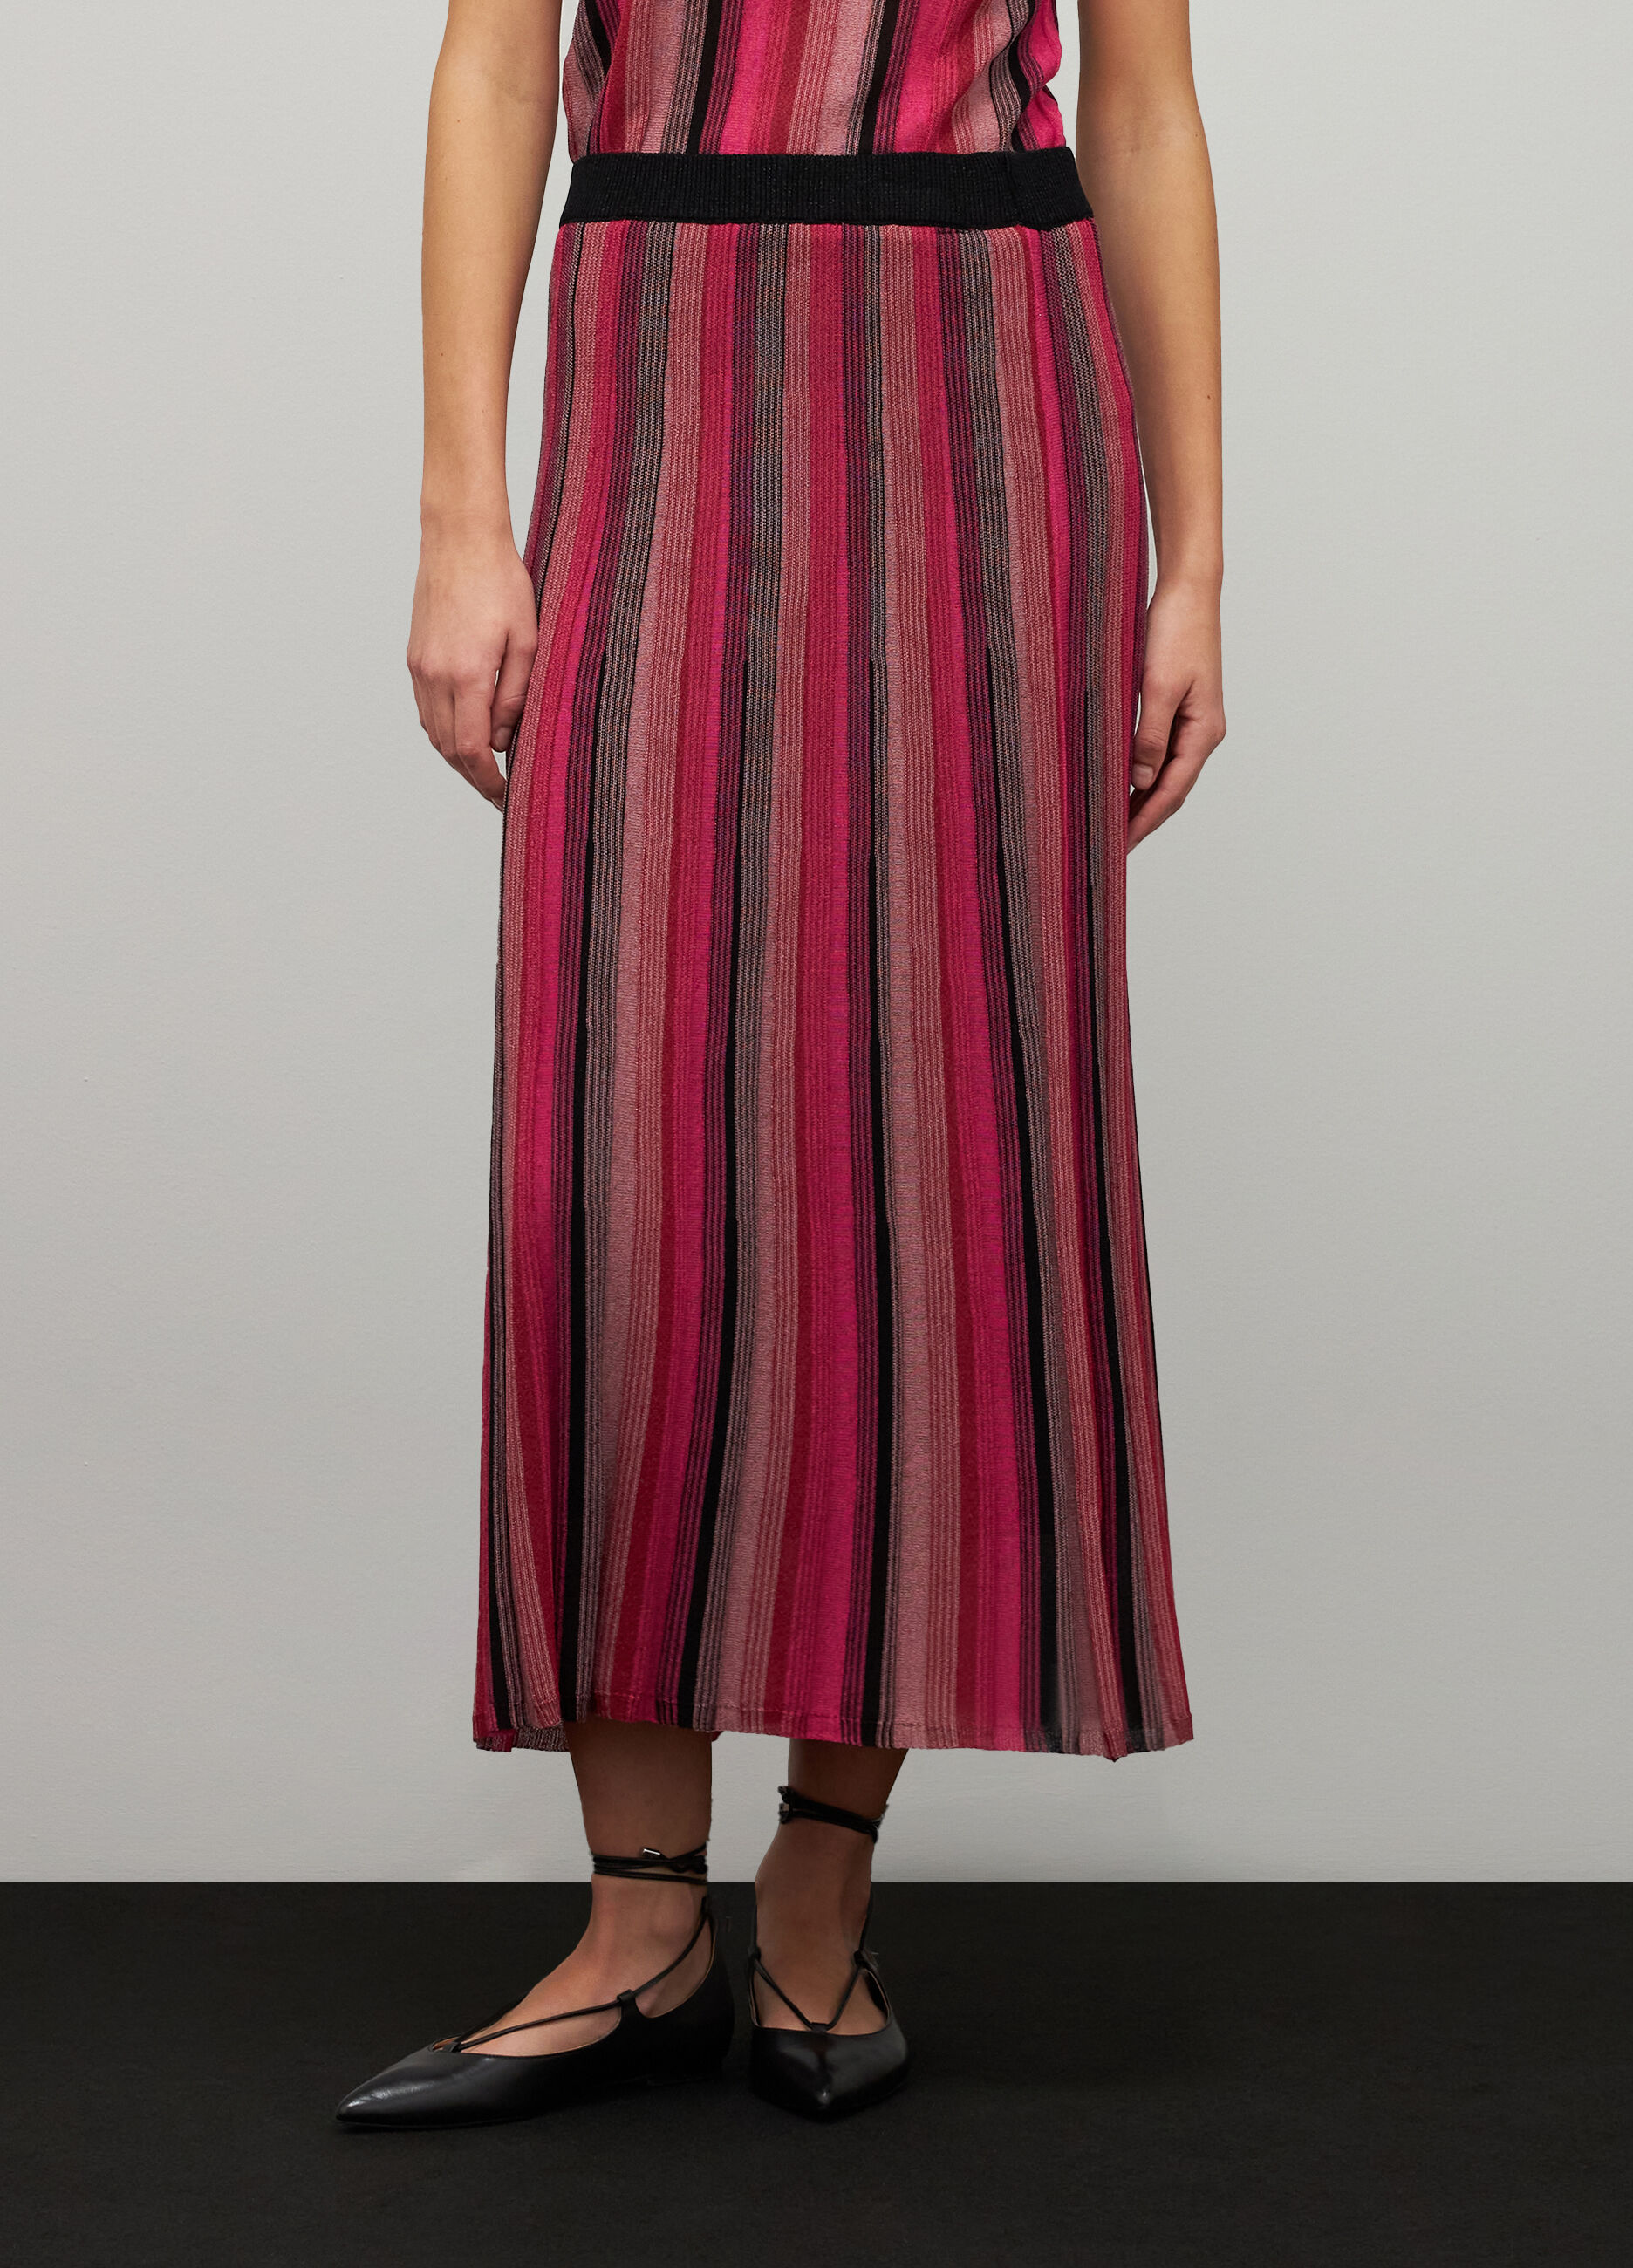 Striped long skirt